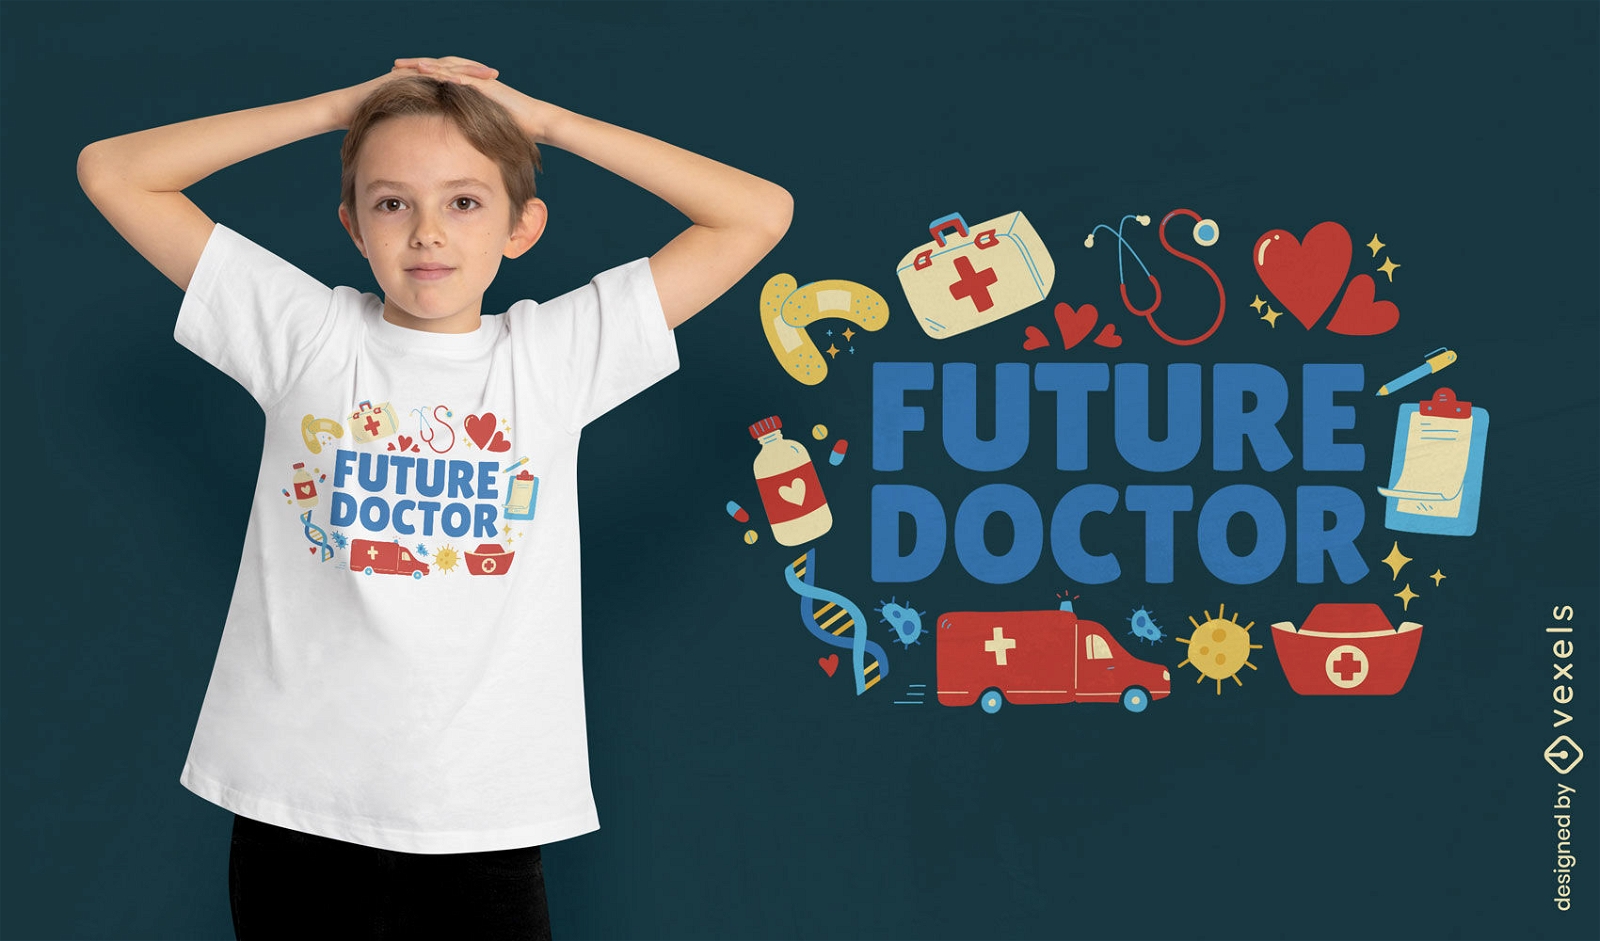 Zukünftiger Arzt mit T-Shirt-Design für medizinische Elemente